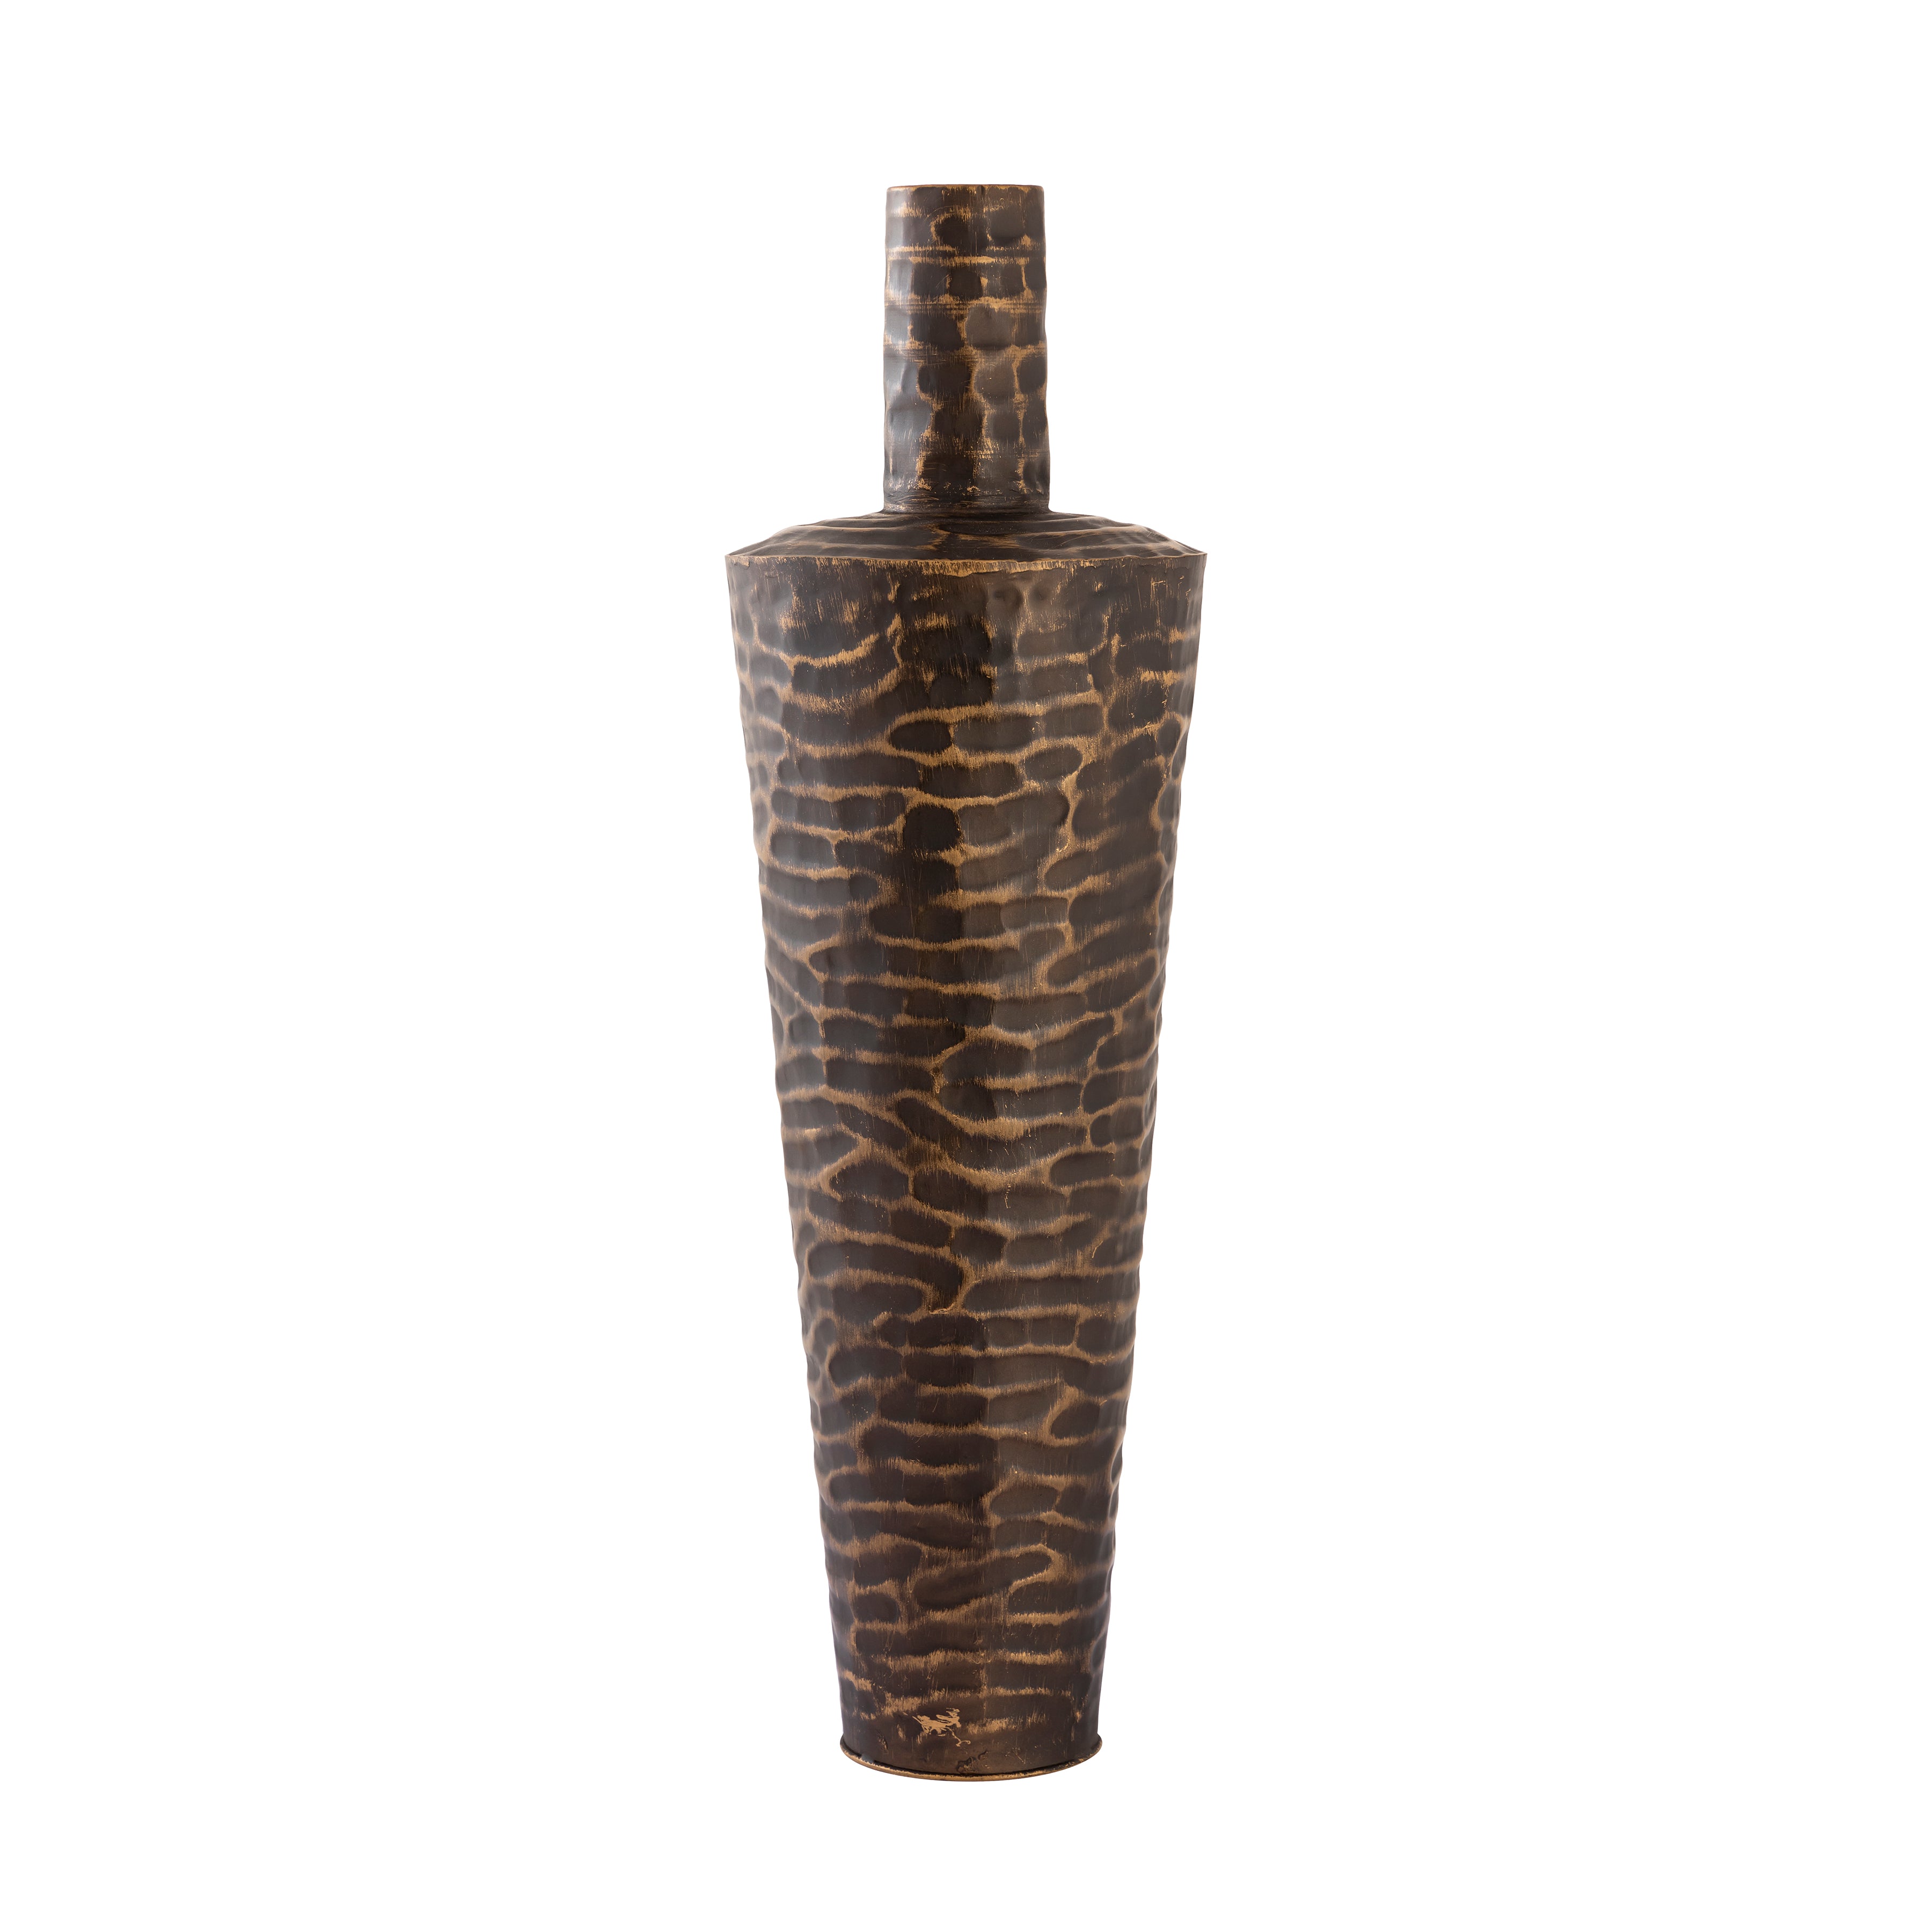 Council Vase - Large Bronze